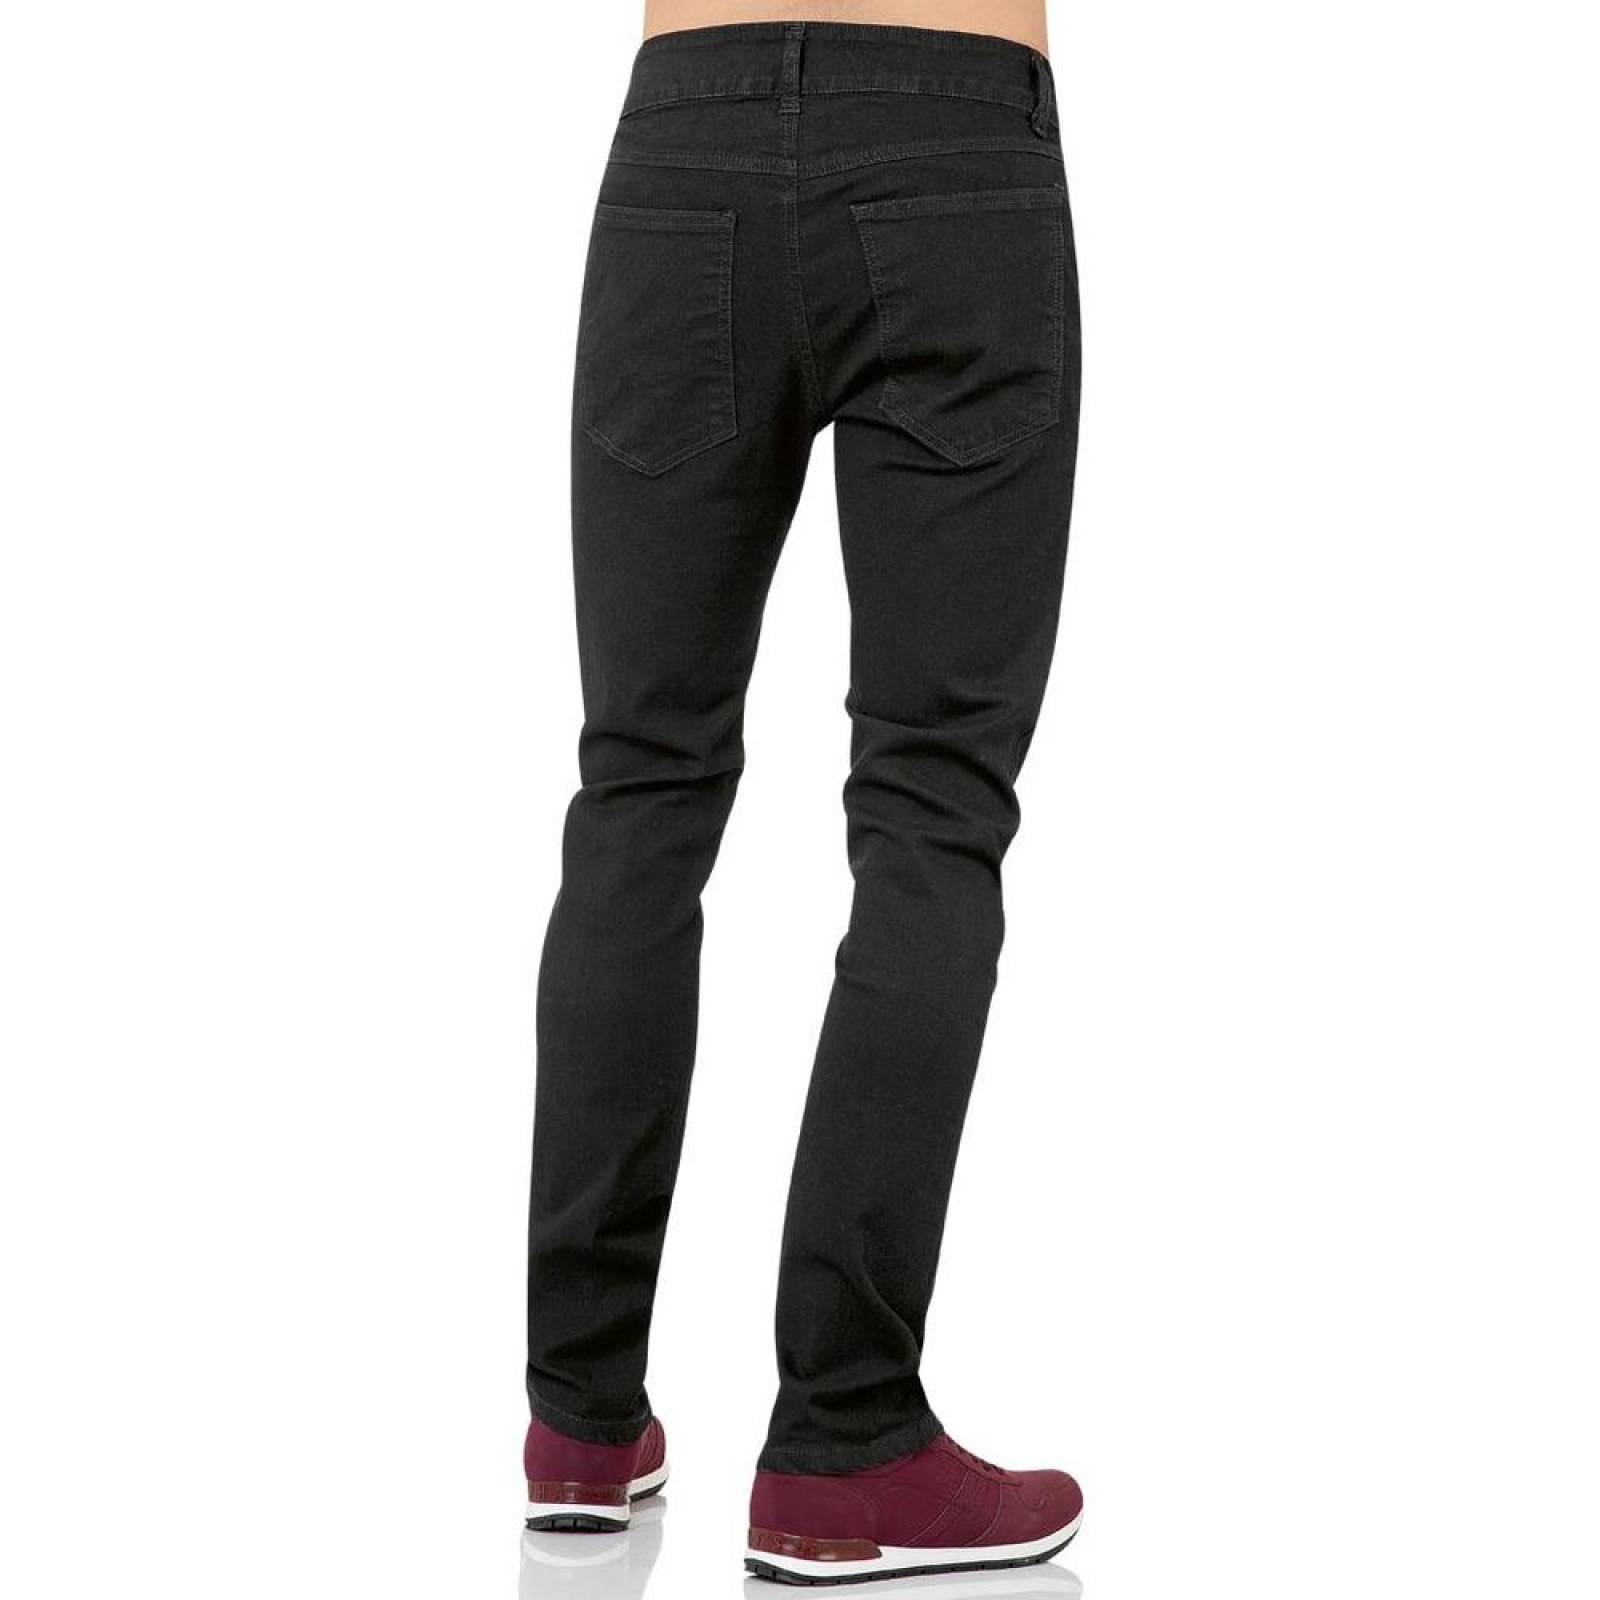 Jeans Básico Hombre Salvaje Tentación Negro 63103301 Mezclilla Stretch 